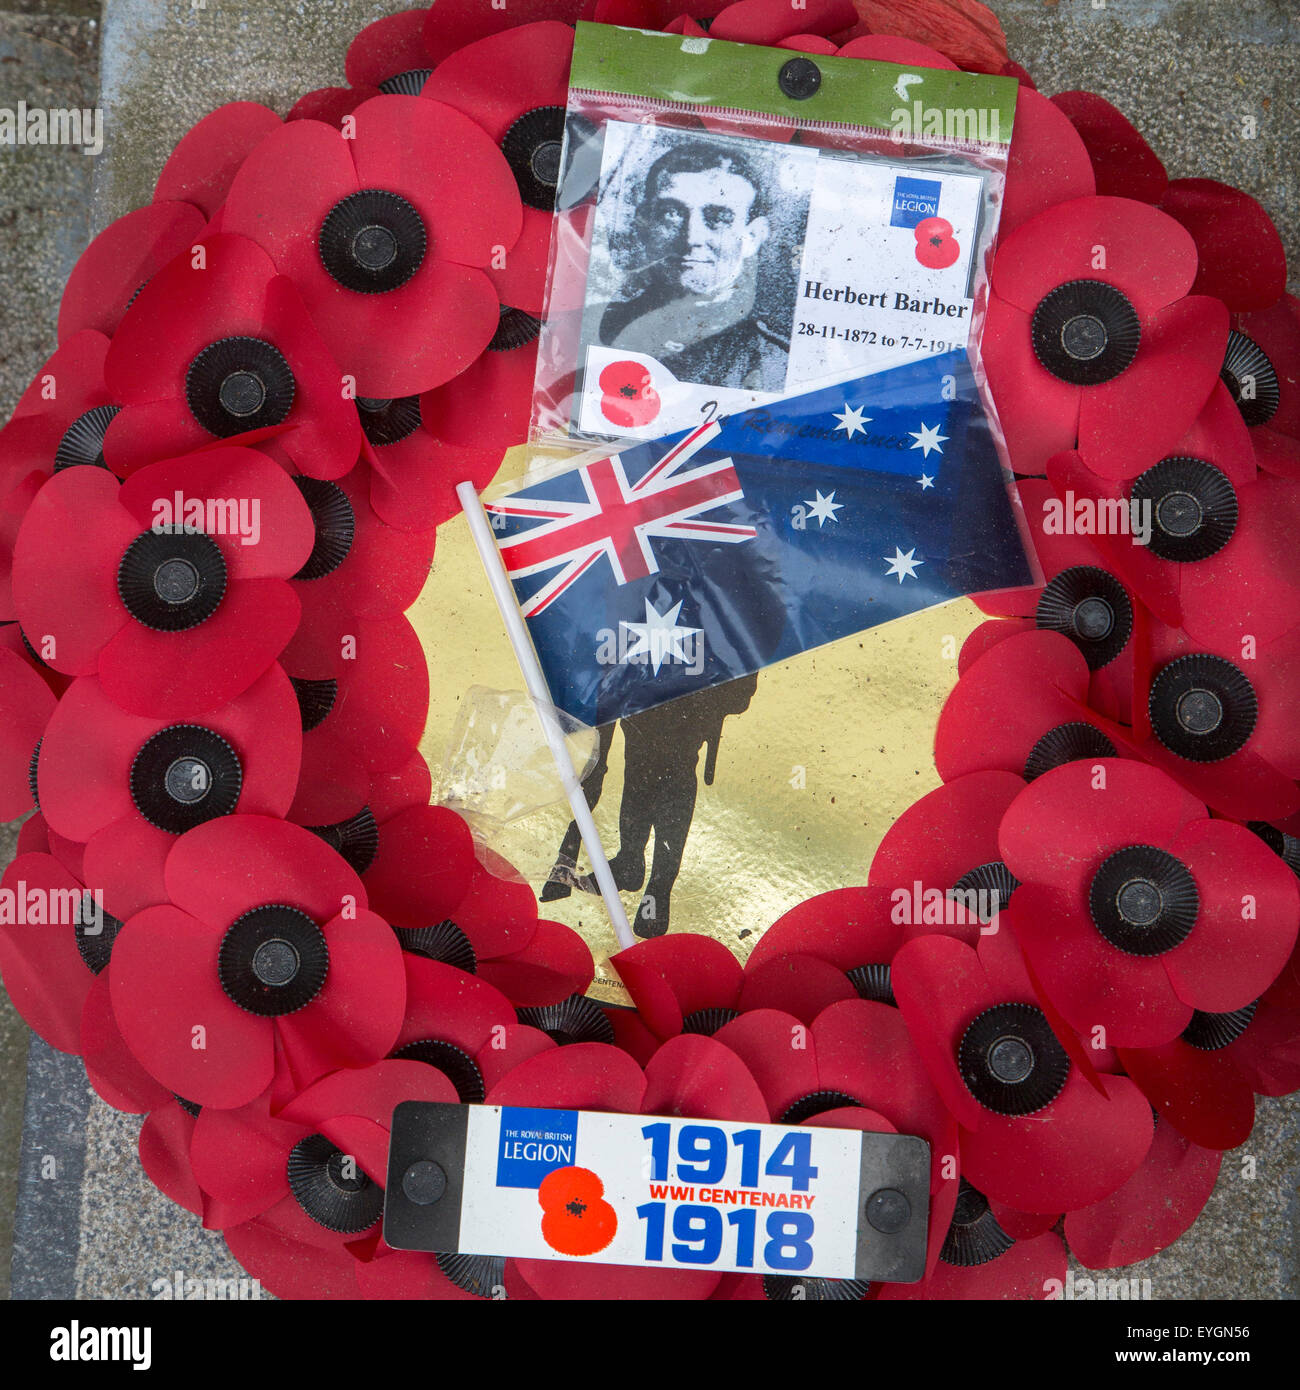 La couronne de pavot pour la première guerre mondiale, un soldat pendant la PREMIÈRE GUERRE MONDIALE commémoration de la centenaire Banque D'Images